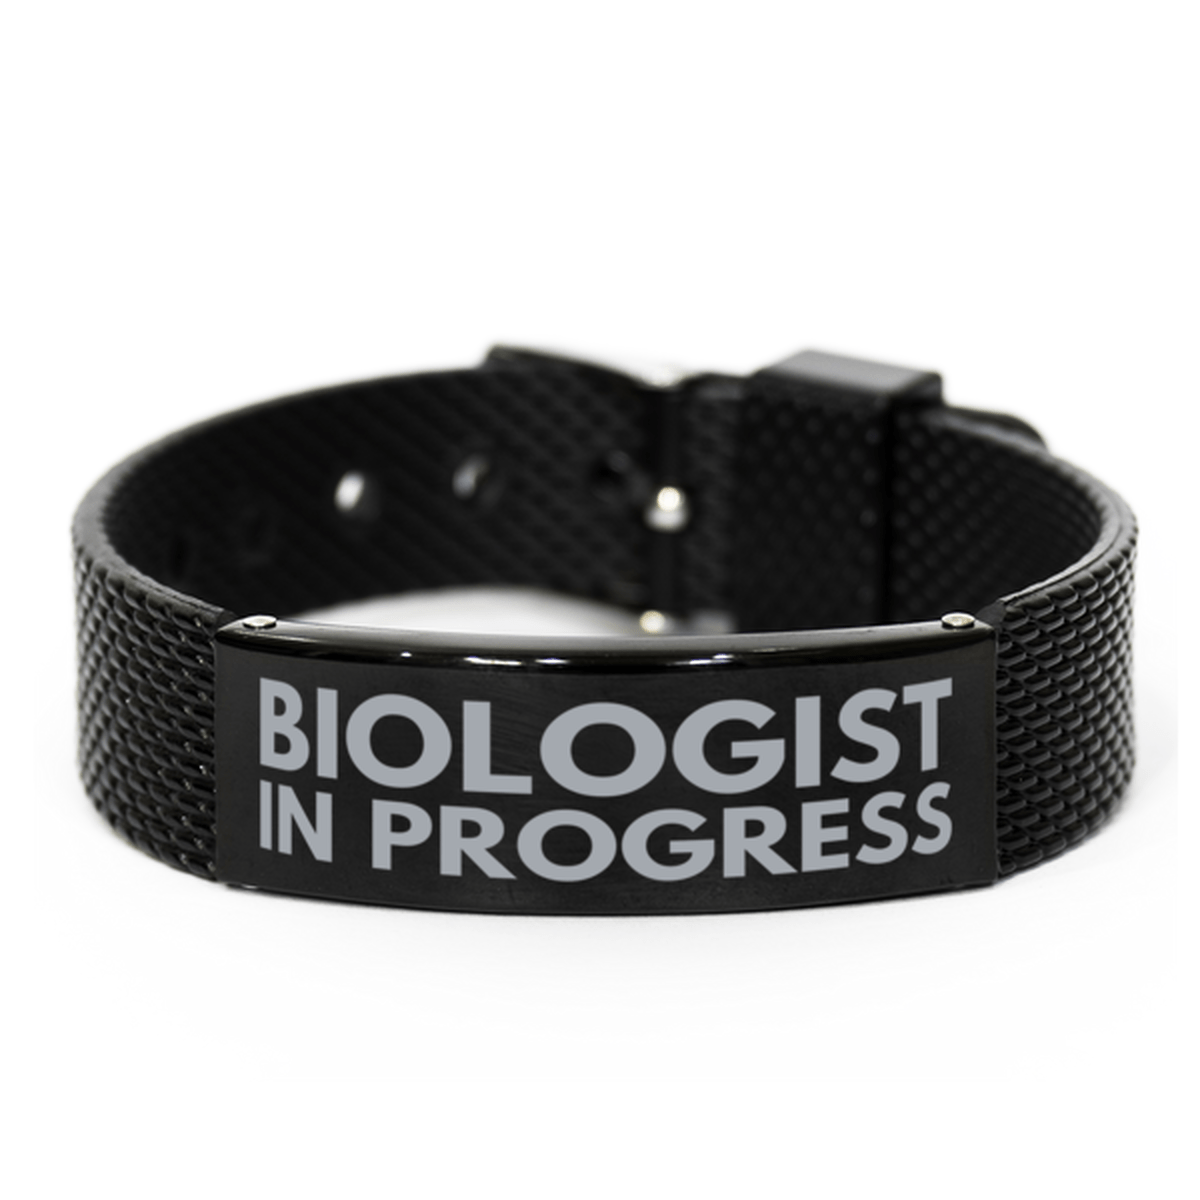 Inspirational Biologist Black Shark Mesh Bracelet, Biologist In Progress, Best Graduation Gifts for Students